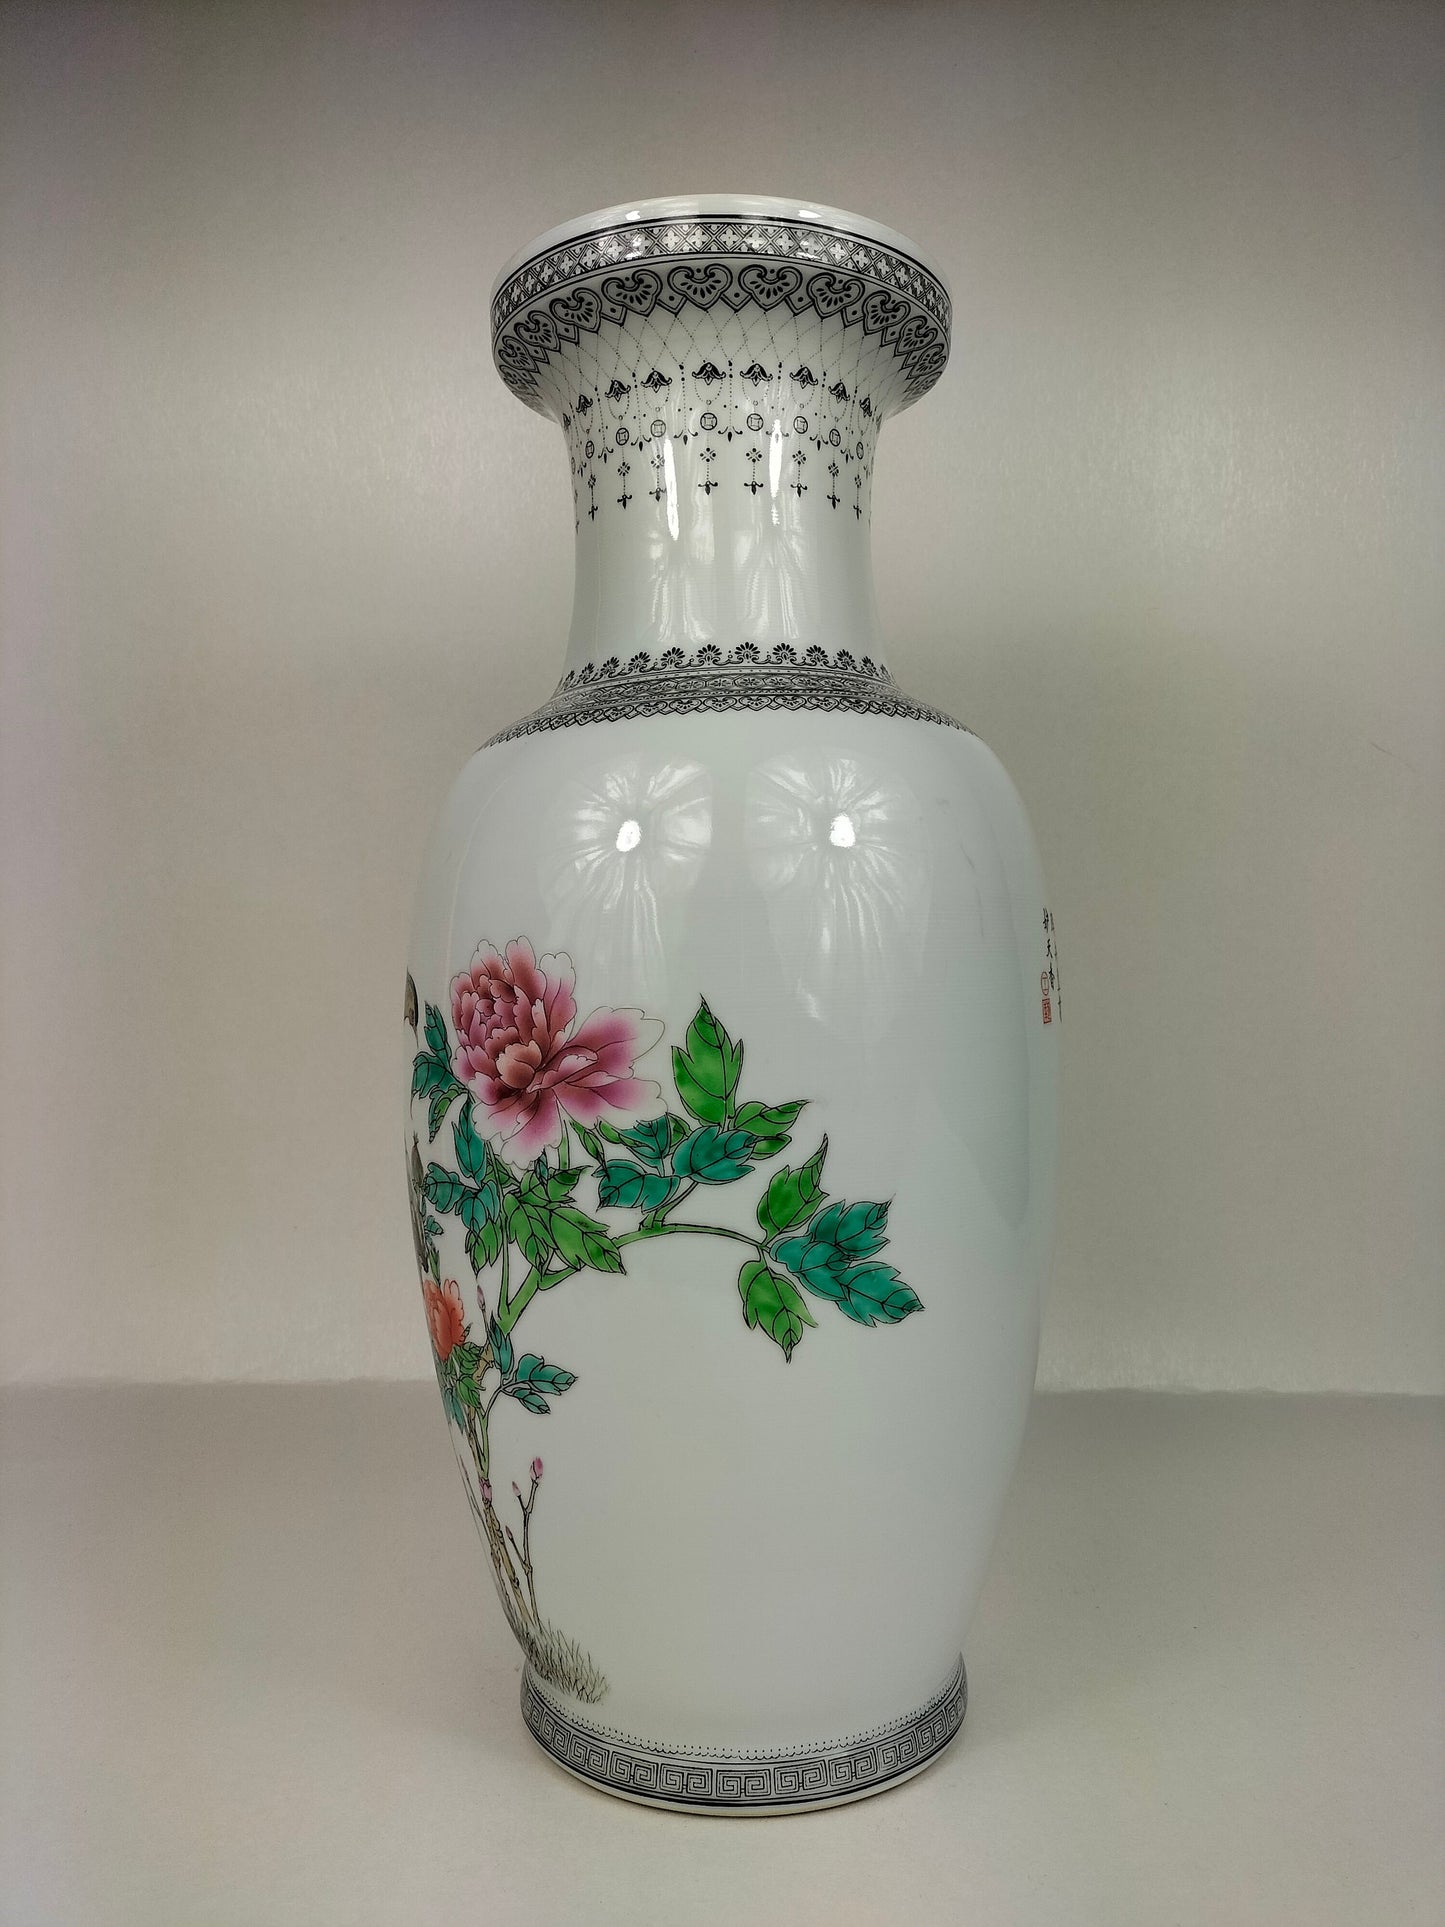 装饰有孔雀和鲜花的中国粉彩花瓶 // 景德镇 - 20 世纪